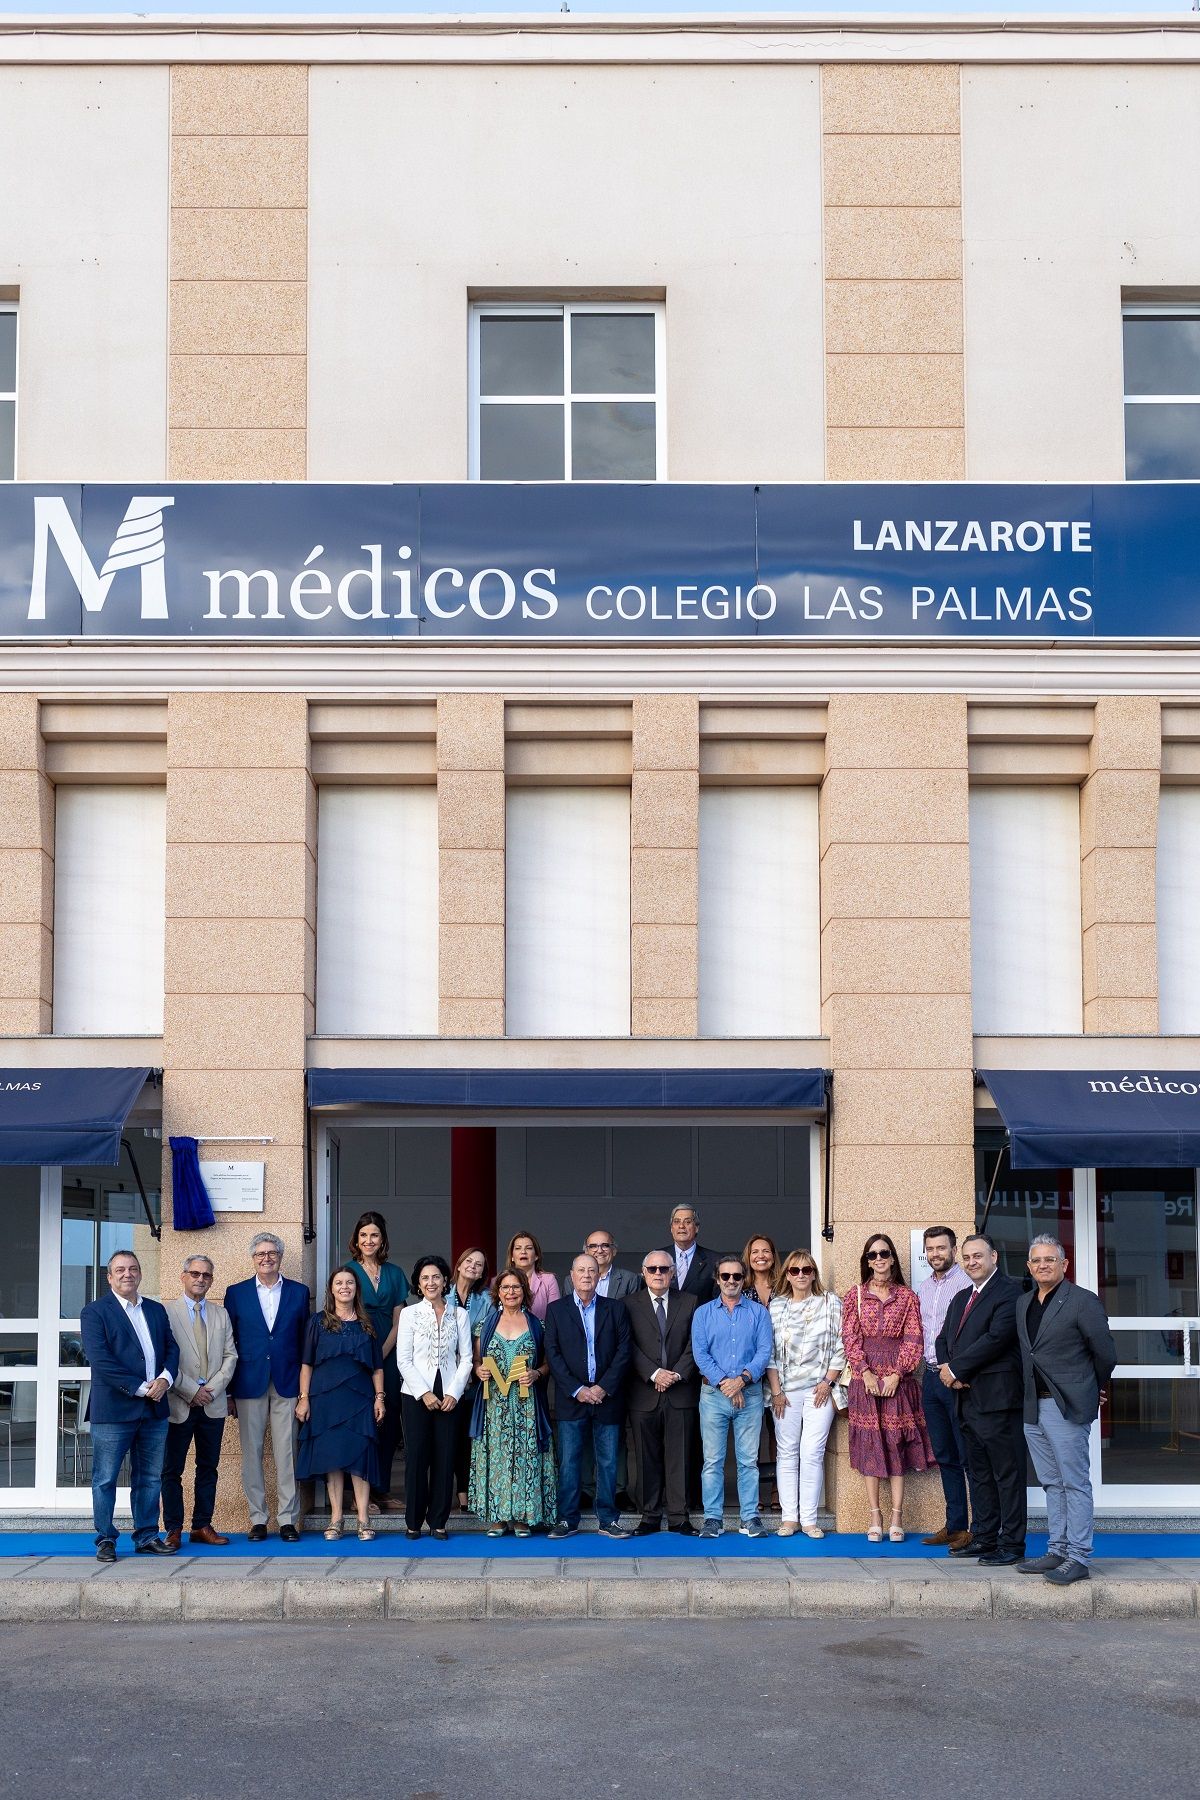 El Colegio de Médicos de Las Palmas inaugura nueva sede en Lanzarote 